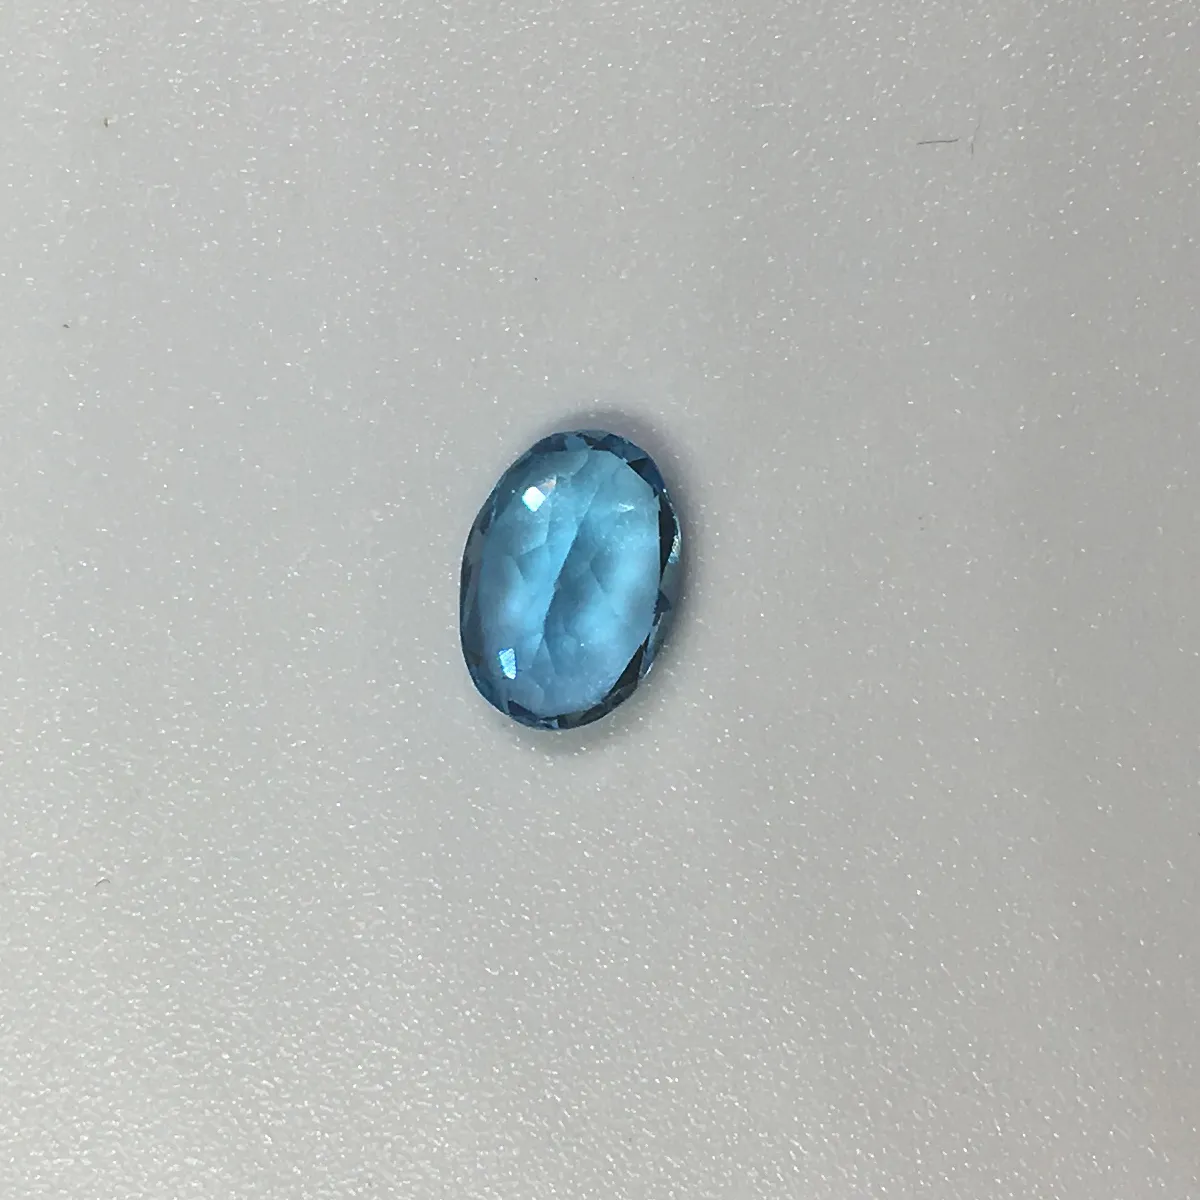 Promoção topa qualidade luz azul topázio natural pedra solta gem para anel brinco ou pingente de 5 mm * 7 mm de peso é de pedra calcária de topázio de 0,6 ct